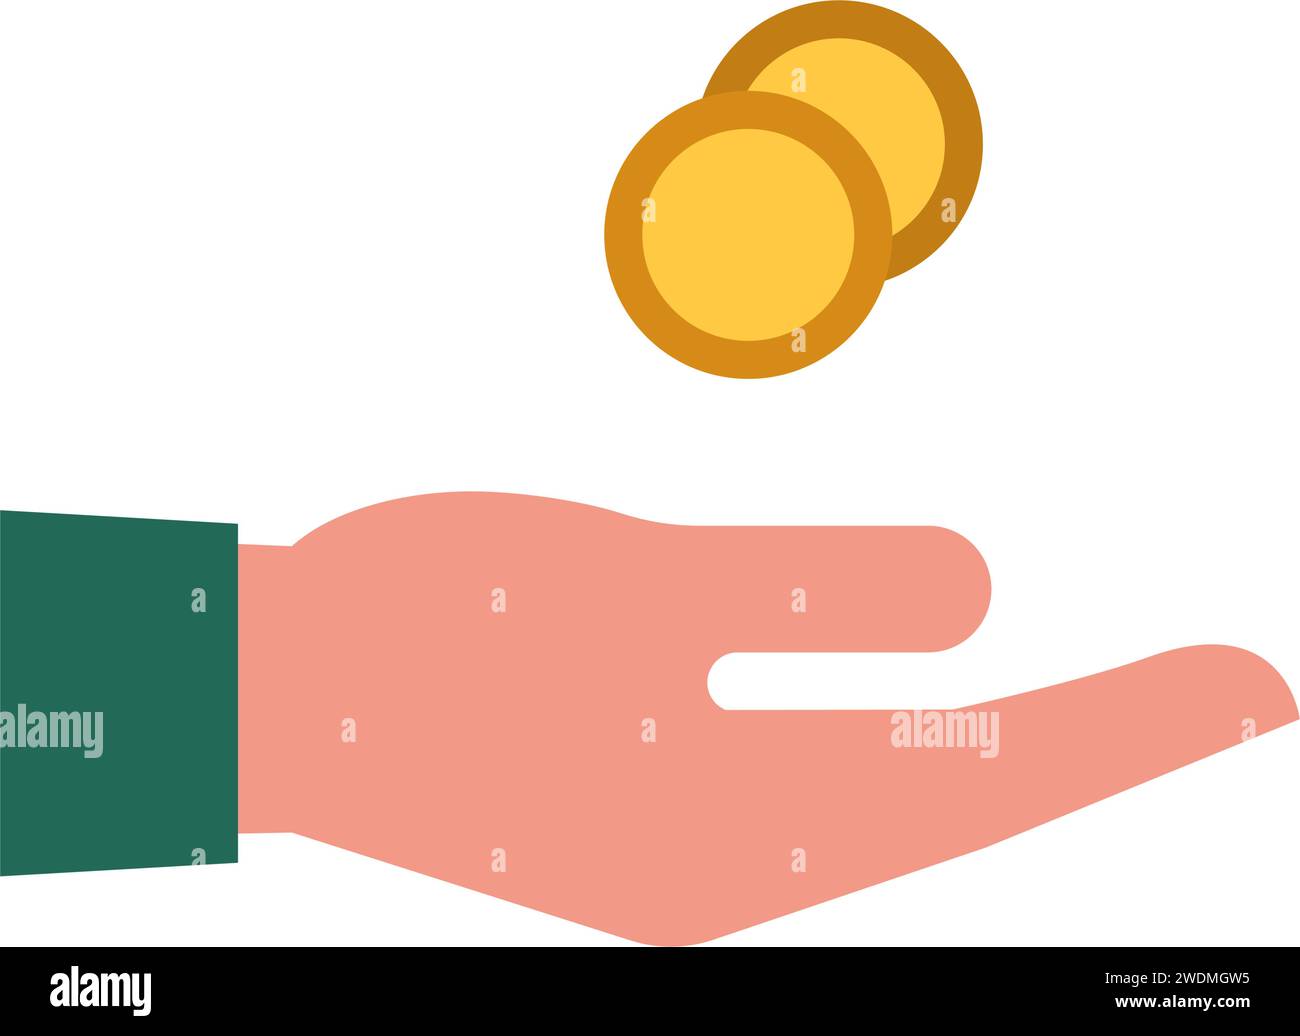 Geschäftsmann Hand Receiving Geld, Zahlungen und Spesen Konzept, isoliertes Symbol Stock Vektor